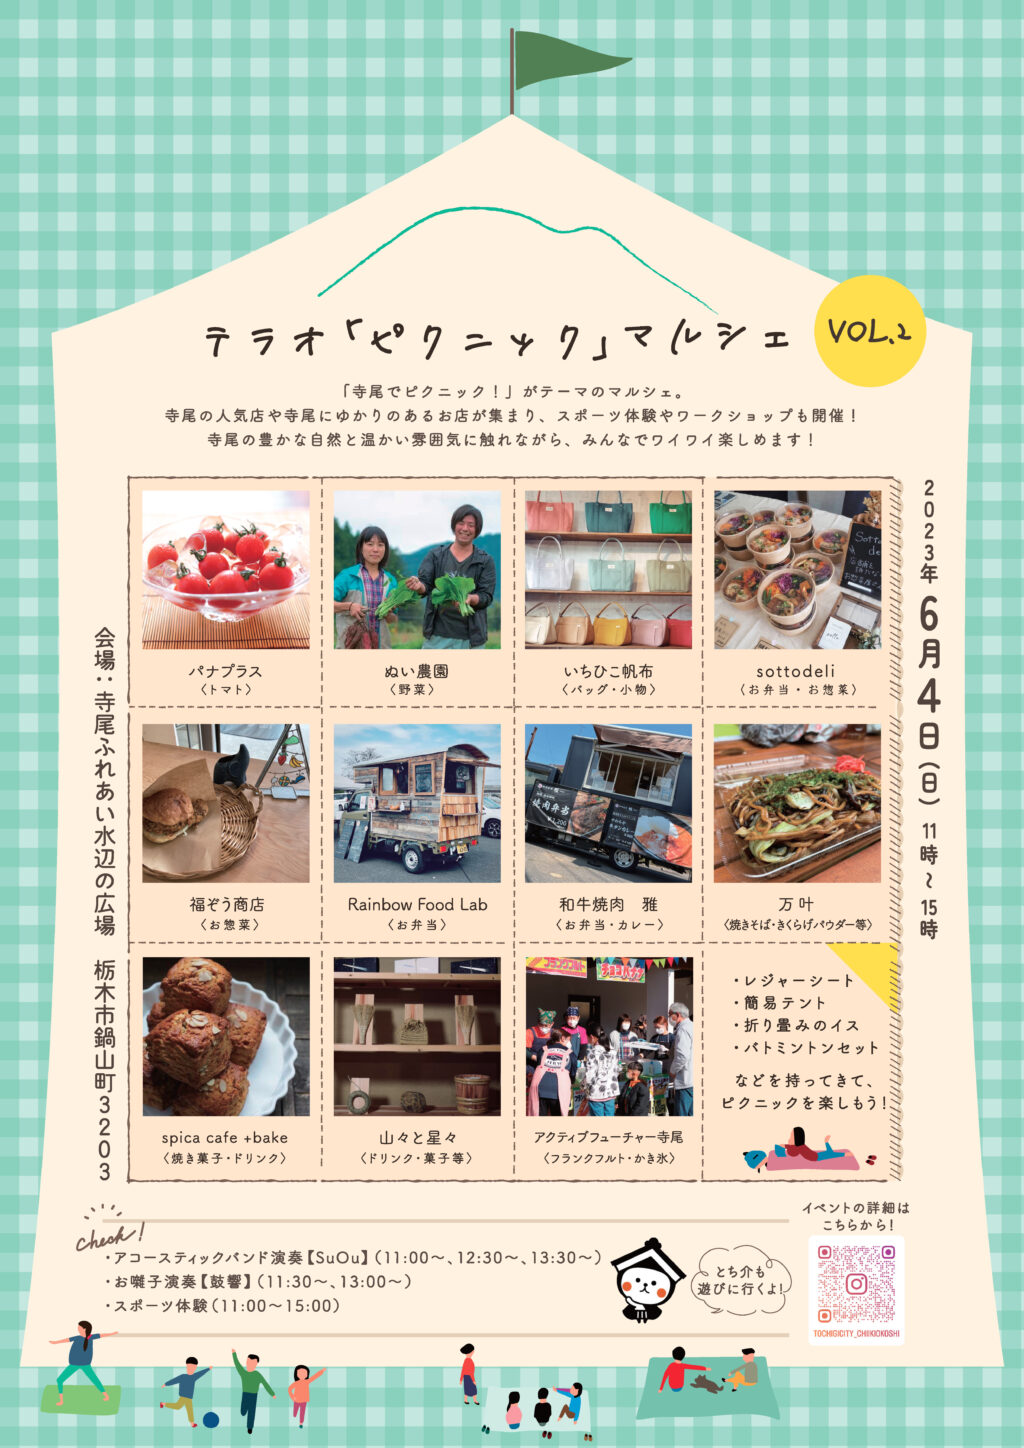 【栃木市】テラオ「ピクニック」マルシェVOL.2 開催決定！ | 地域のトピックス